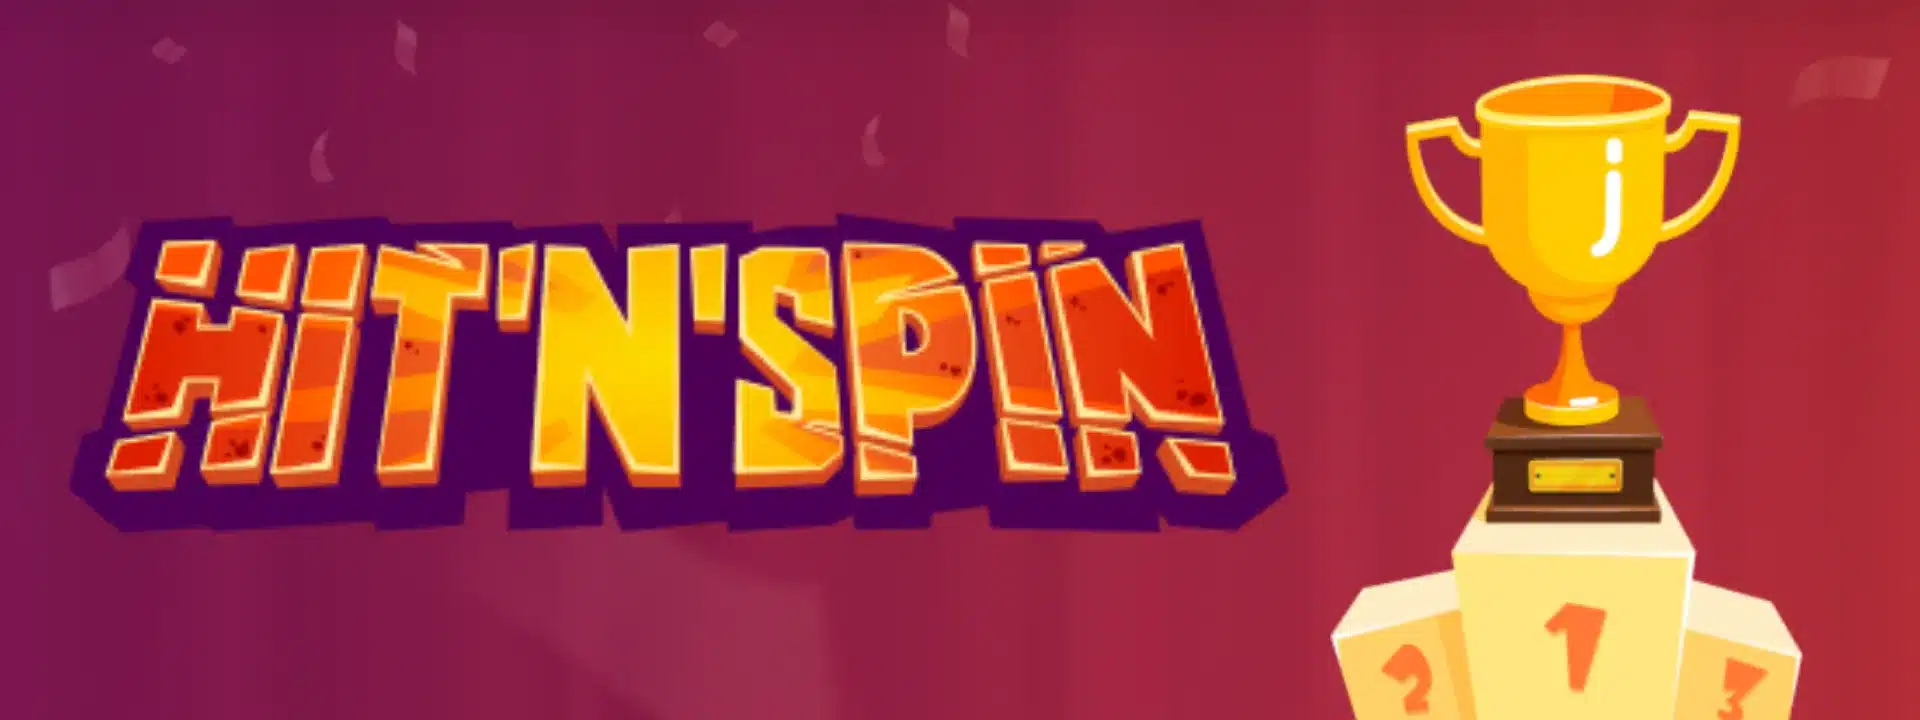 HitnSpin Casino Erfahrungen und Promo Bonus Code